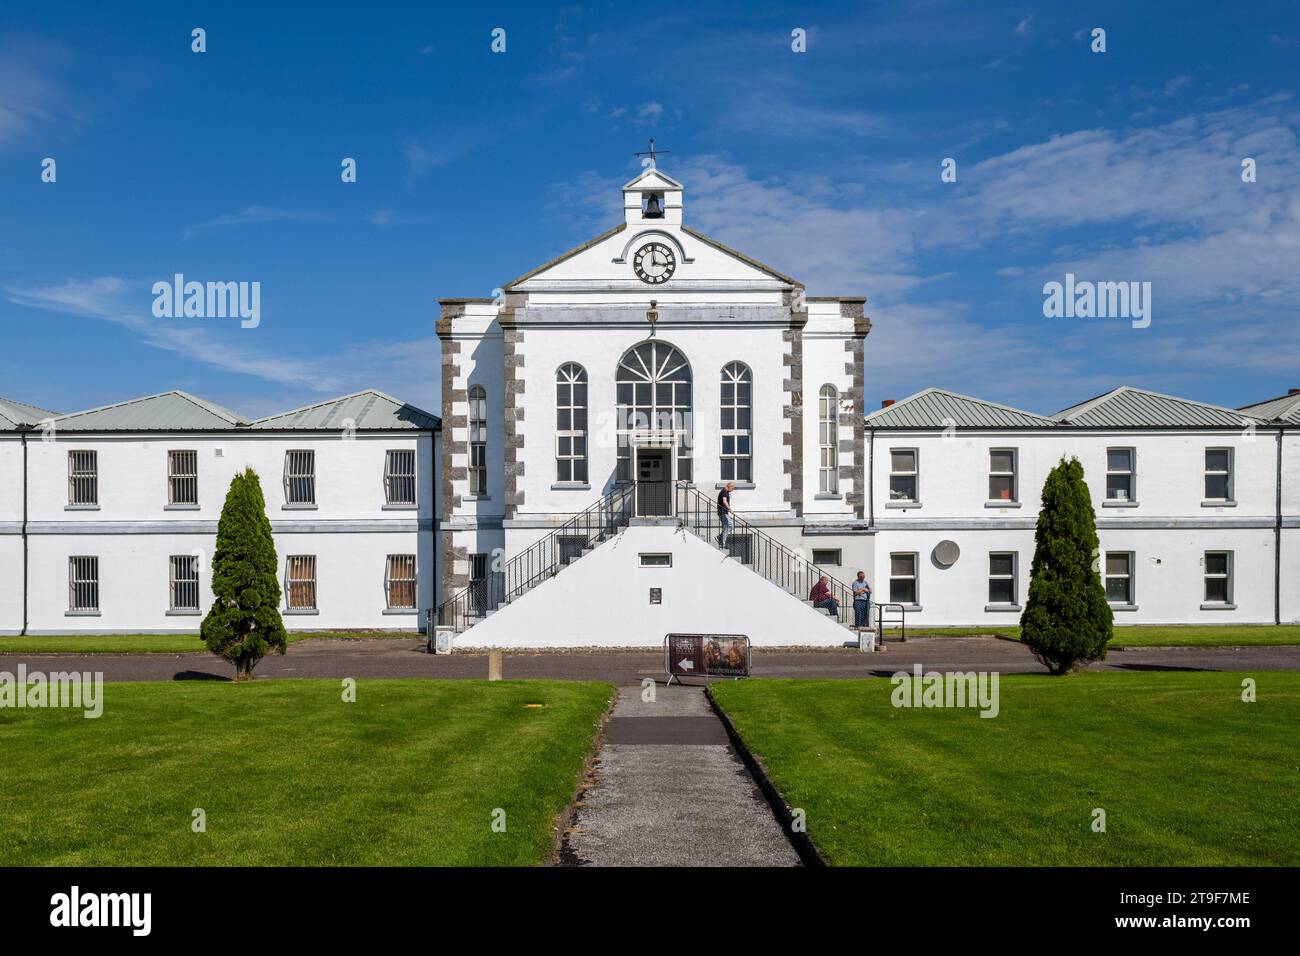 Bâtiment Mitchel Hall, connu sous le nom de bloc 'C', qui a été achevé en 1851 par des prisonniers et des civils, sur Spike Island, Cobh, comté de Cork, Irlande. Banque D'Images